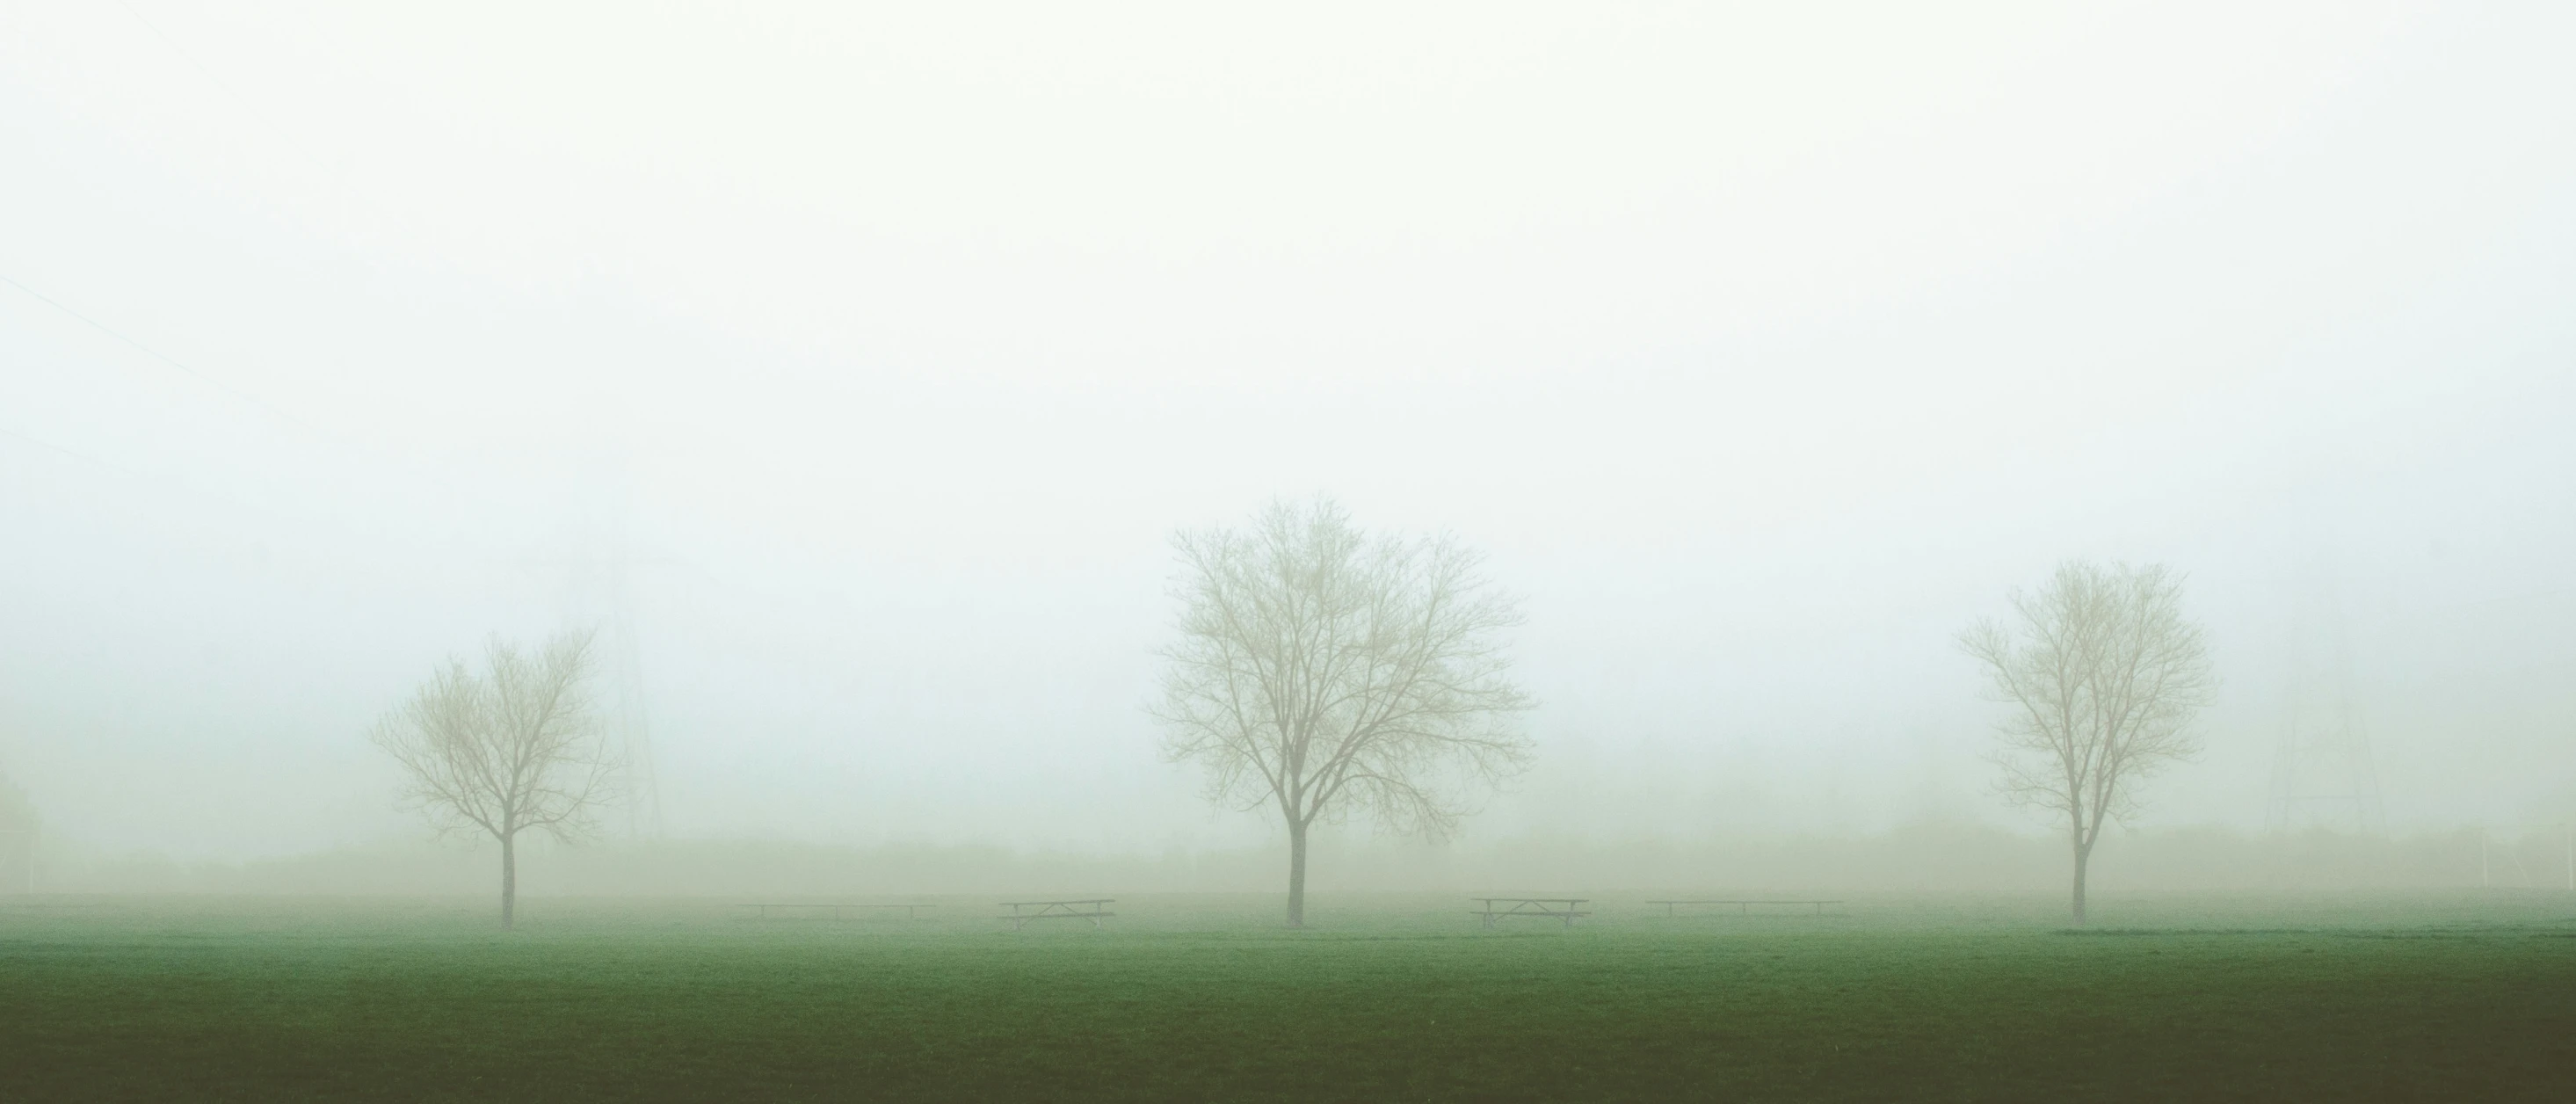 trees standing in the fog near an empty field